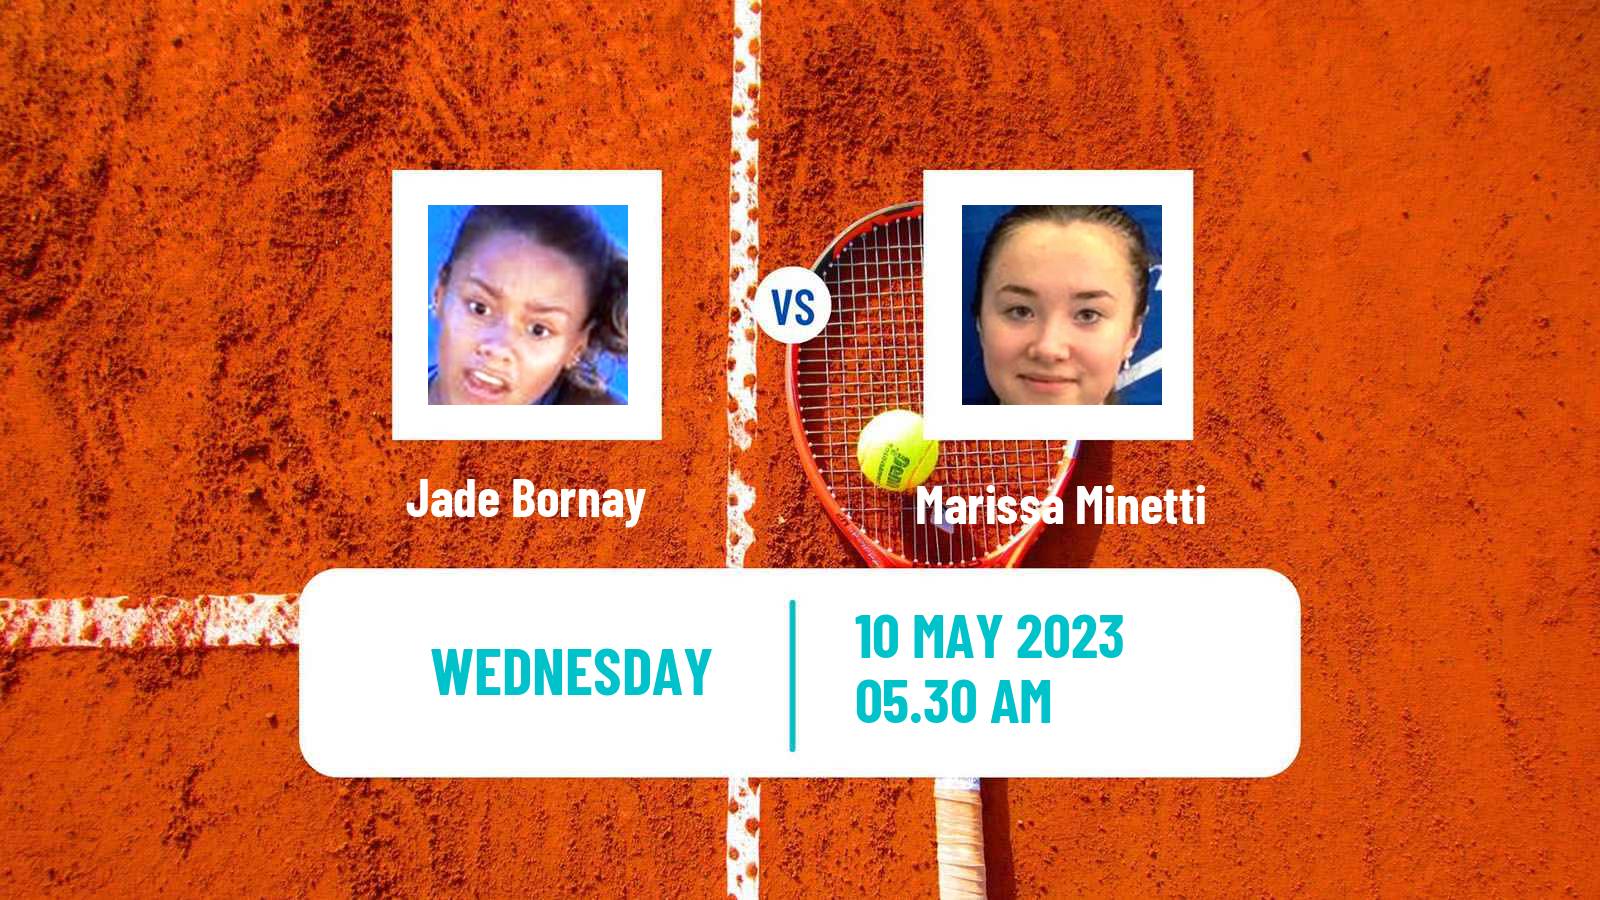 Tennis ITF Tournaments Jade Bornay - Marissa Minetti